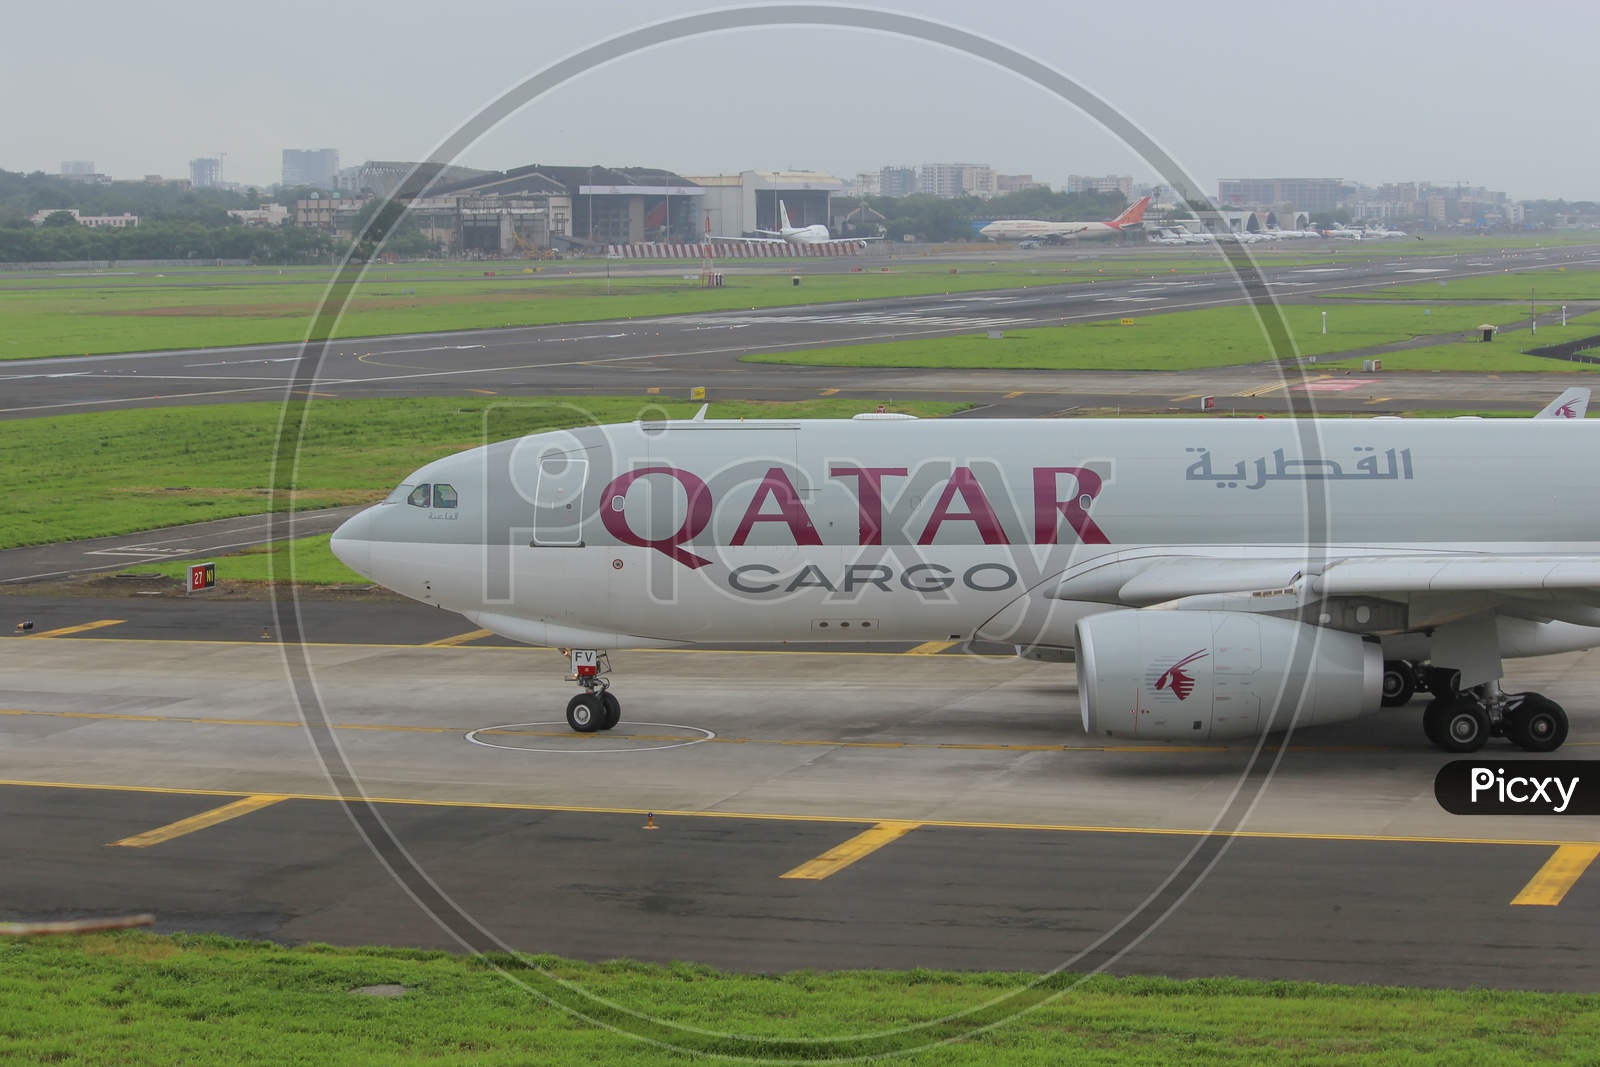 Qatar a330f